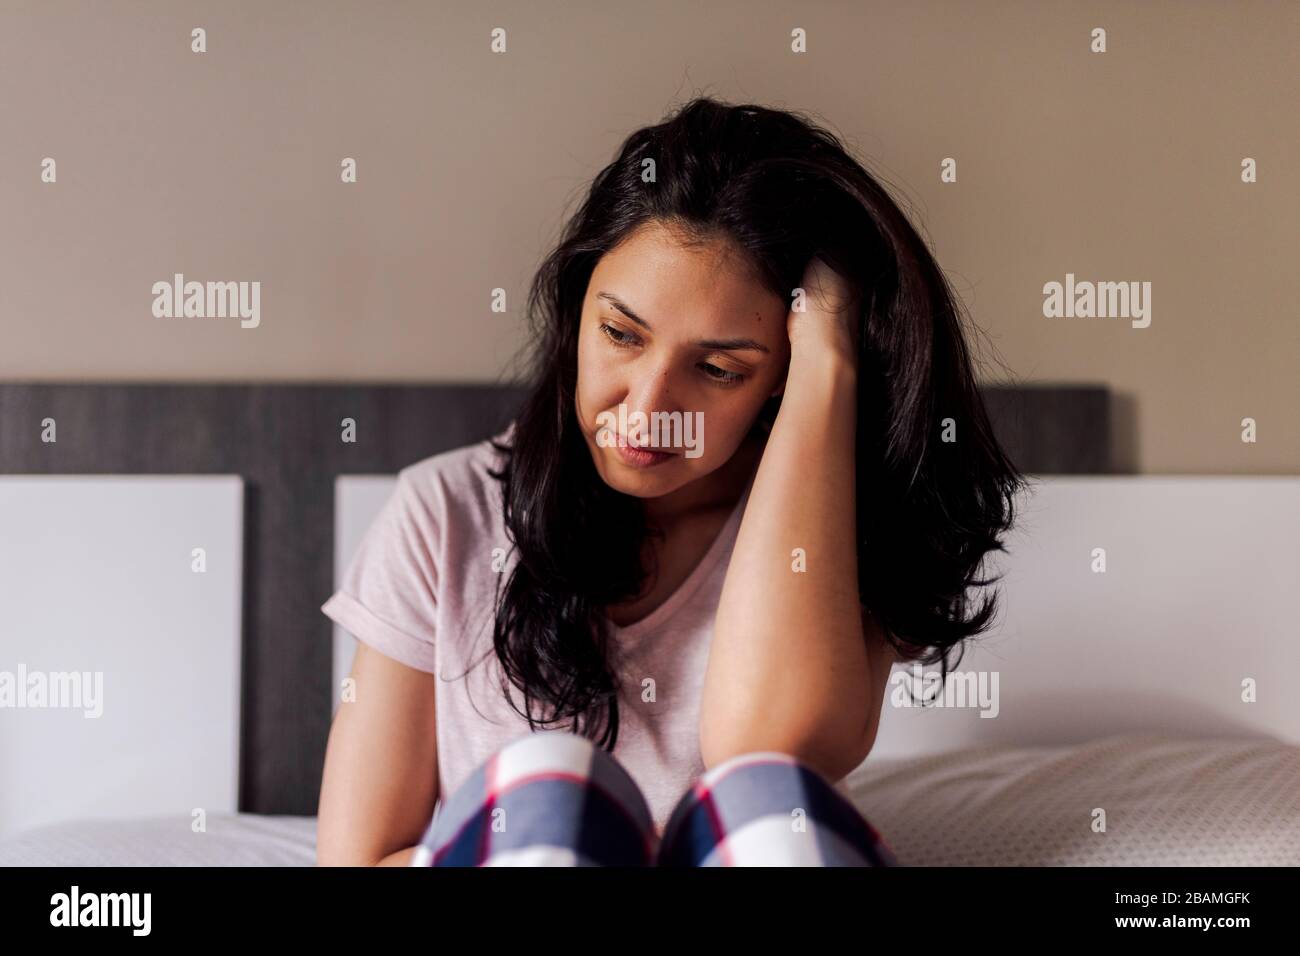 Traurige junge Frau, die allein im Bett in einem Zimmer sitzt. Konzept dramatischer Einsamkeit, Traurigkeit, Depression, traurig. Stockfoto